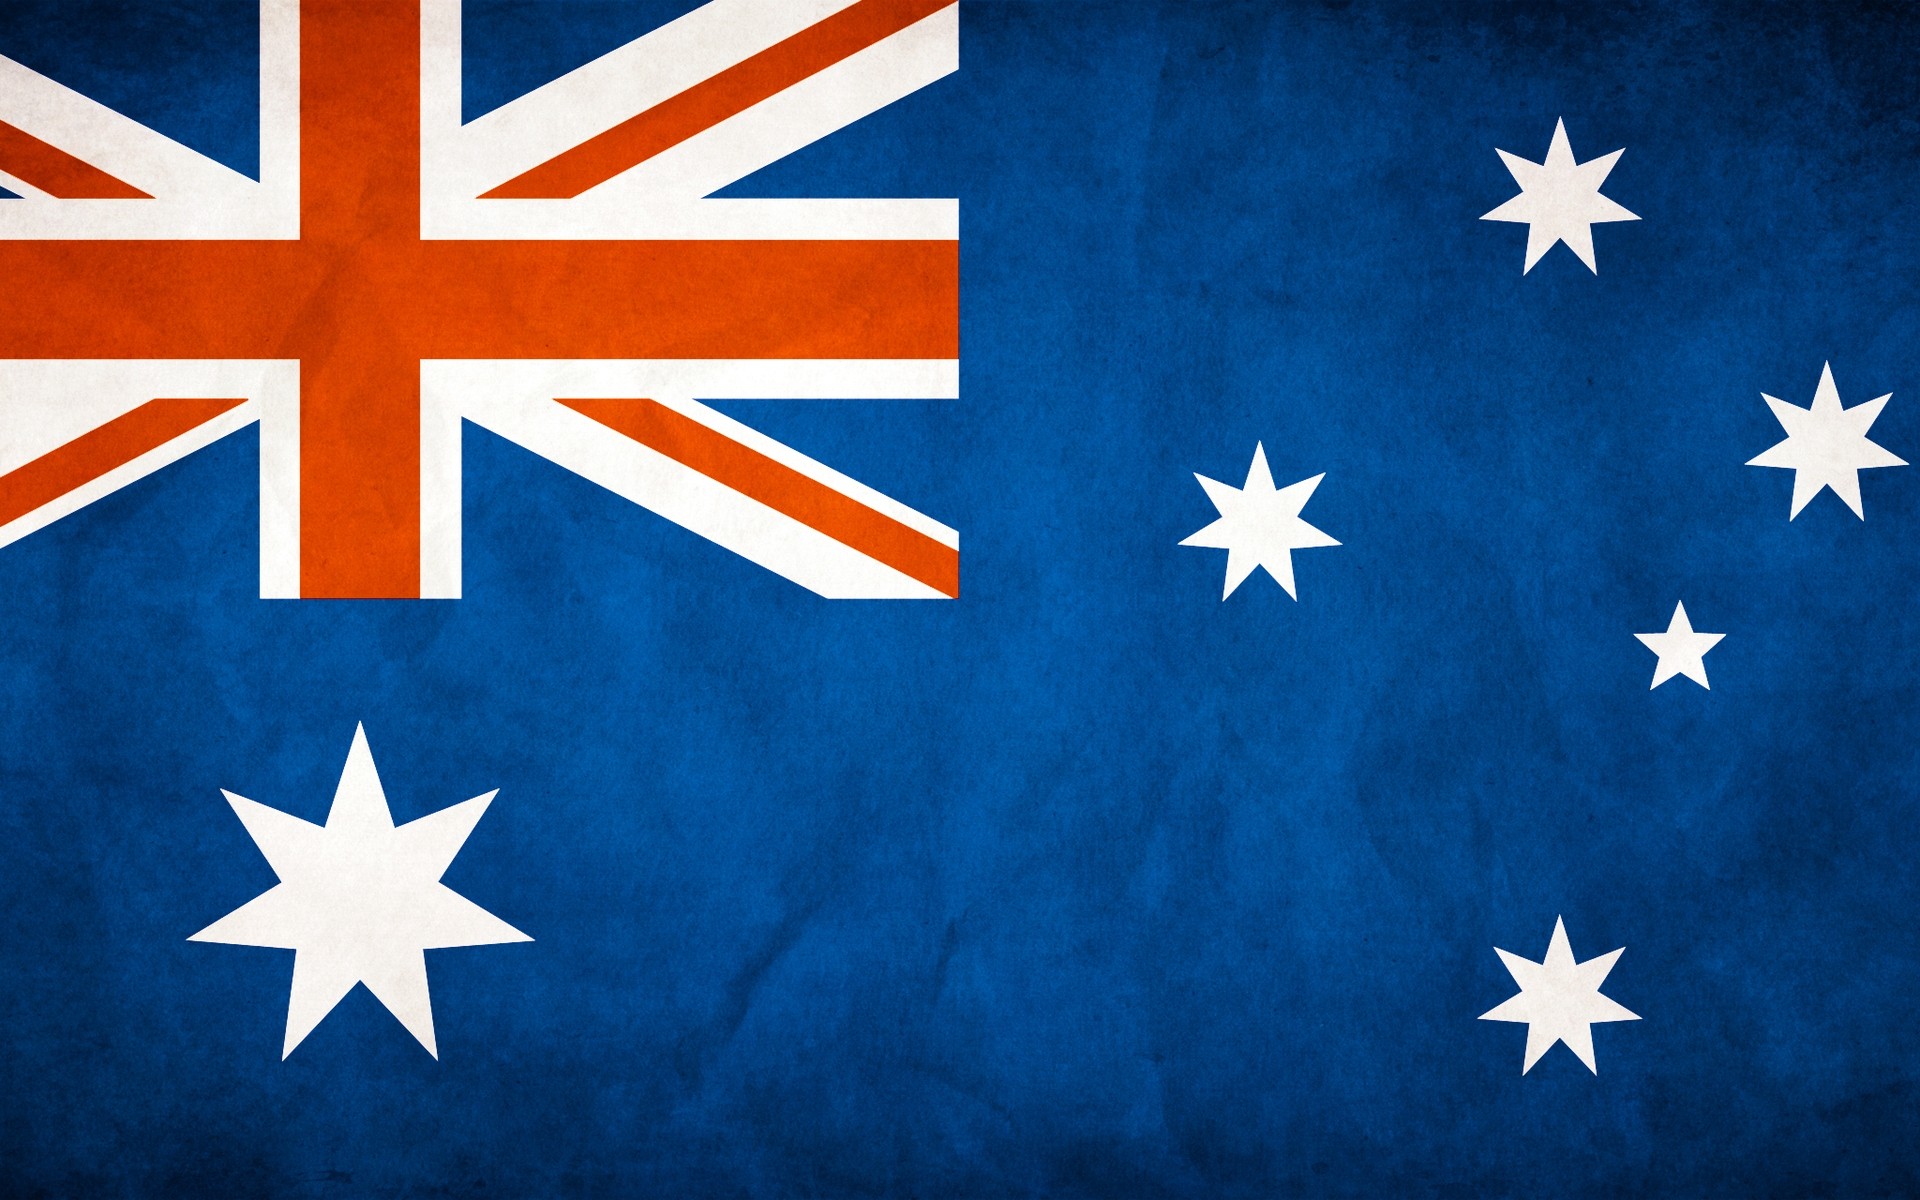 австралия флаг патриотизм символ свобода гордость страна организации национальный администрация союз честь холст полоса крест баннер возрождение единство выборы четверть фон